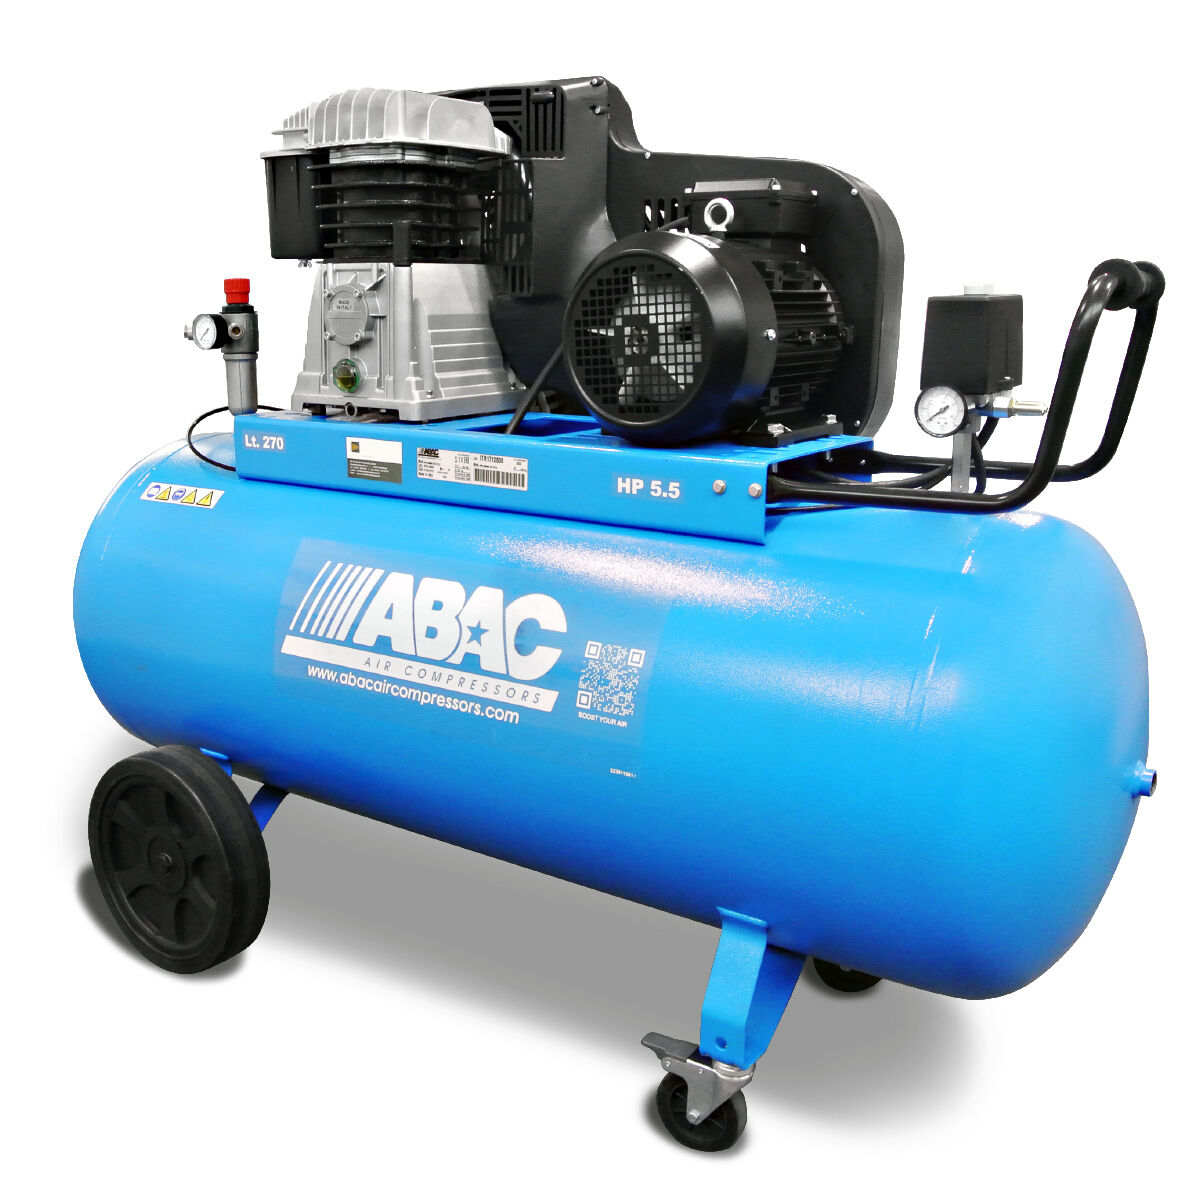 ABAC Kompressor PRO B5900B 270 CT5,5 – Der mobile Werkstattprofi!